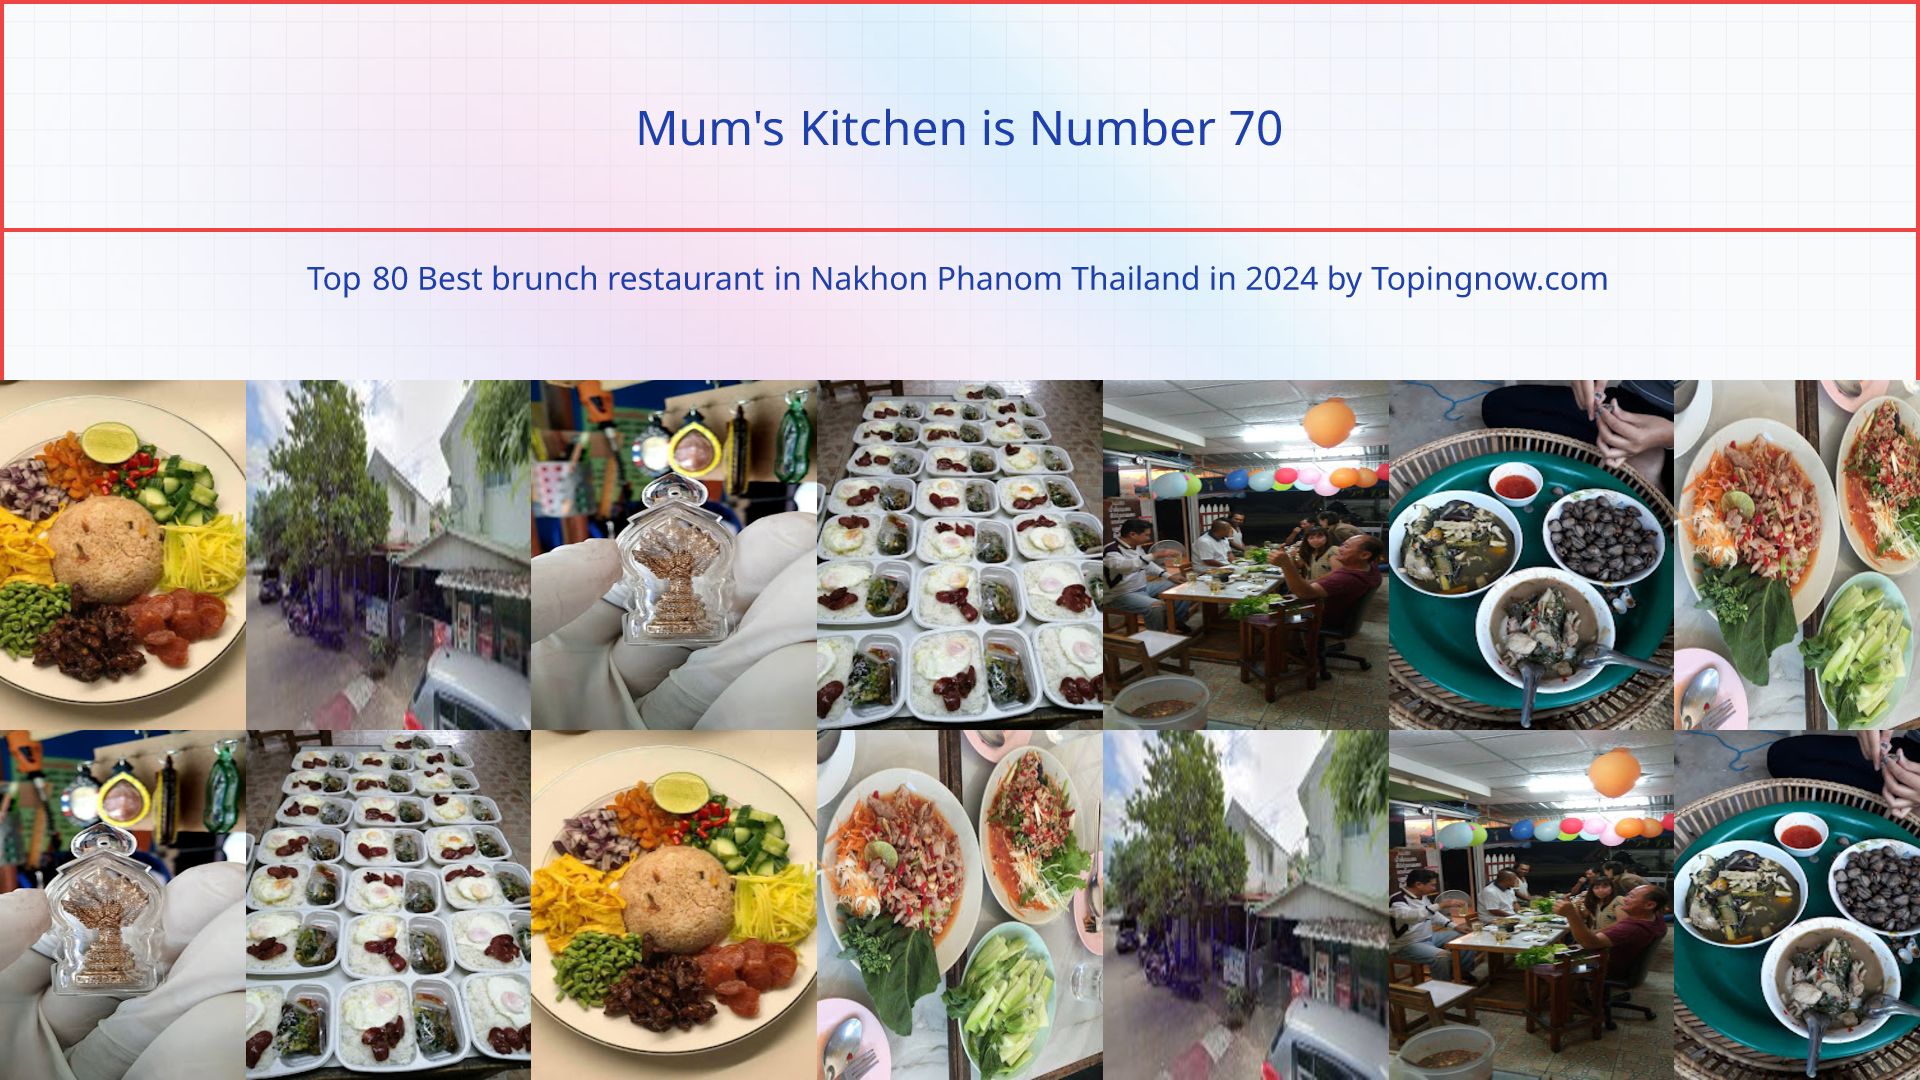 Mum's Kitchen: Top 80 Best brunch restaurant in Nakhon Phanom Thailand in 2024